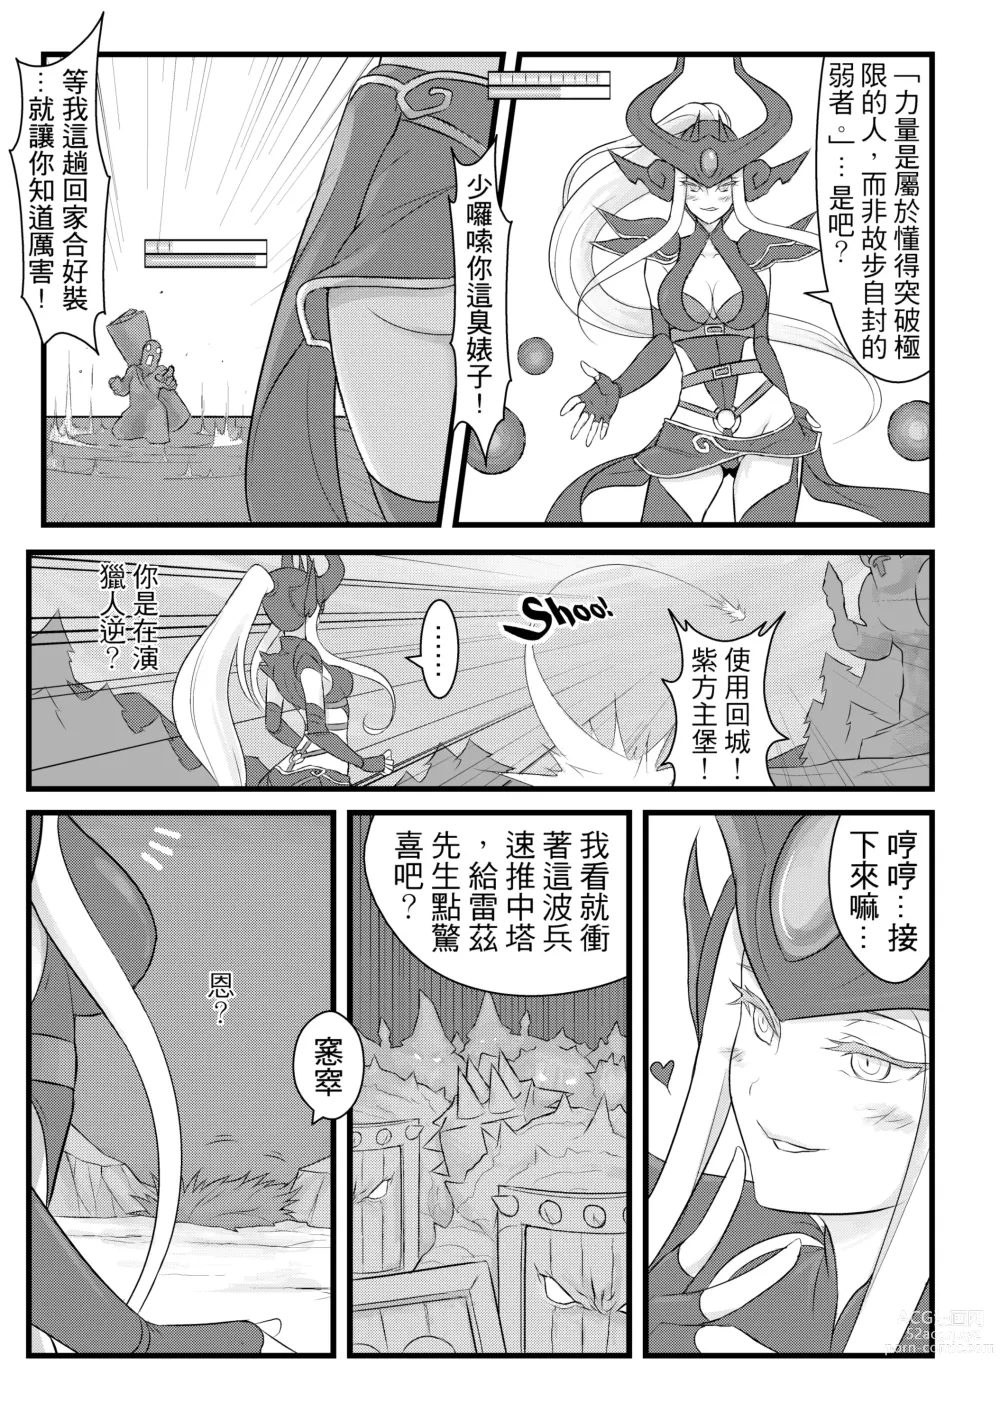 Page 4 of doujinshi ININ Renmei (uncensored)